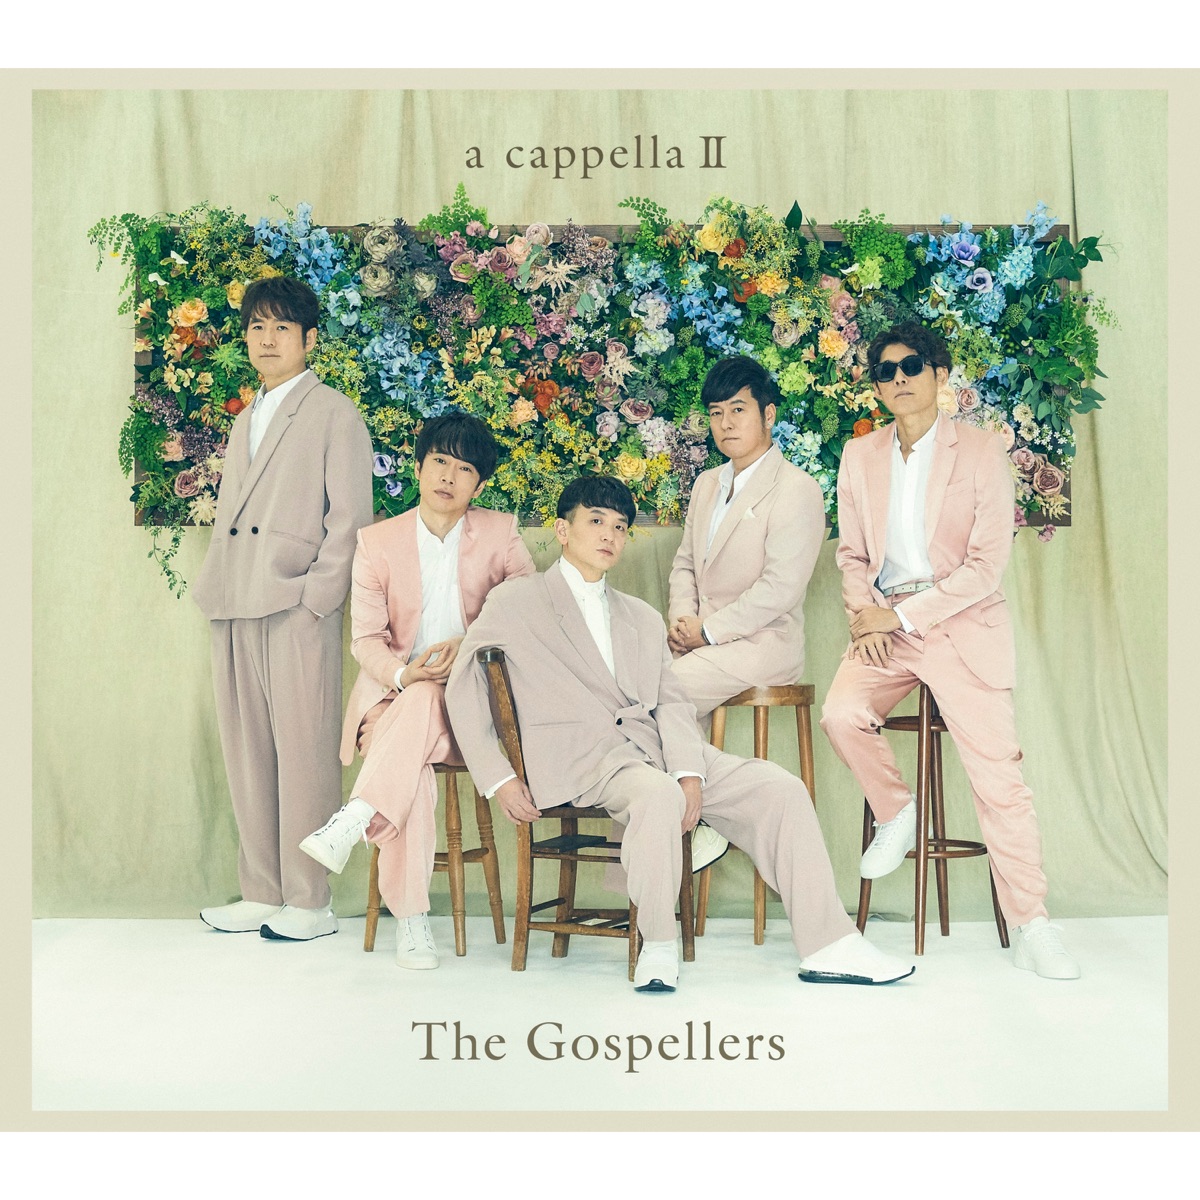 The Gospellers Music Rankings